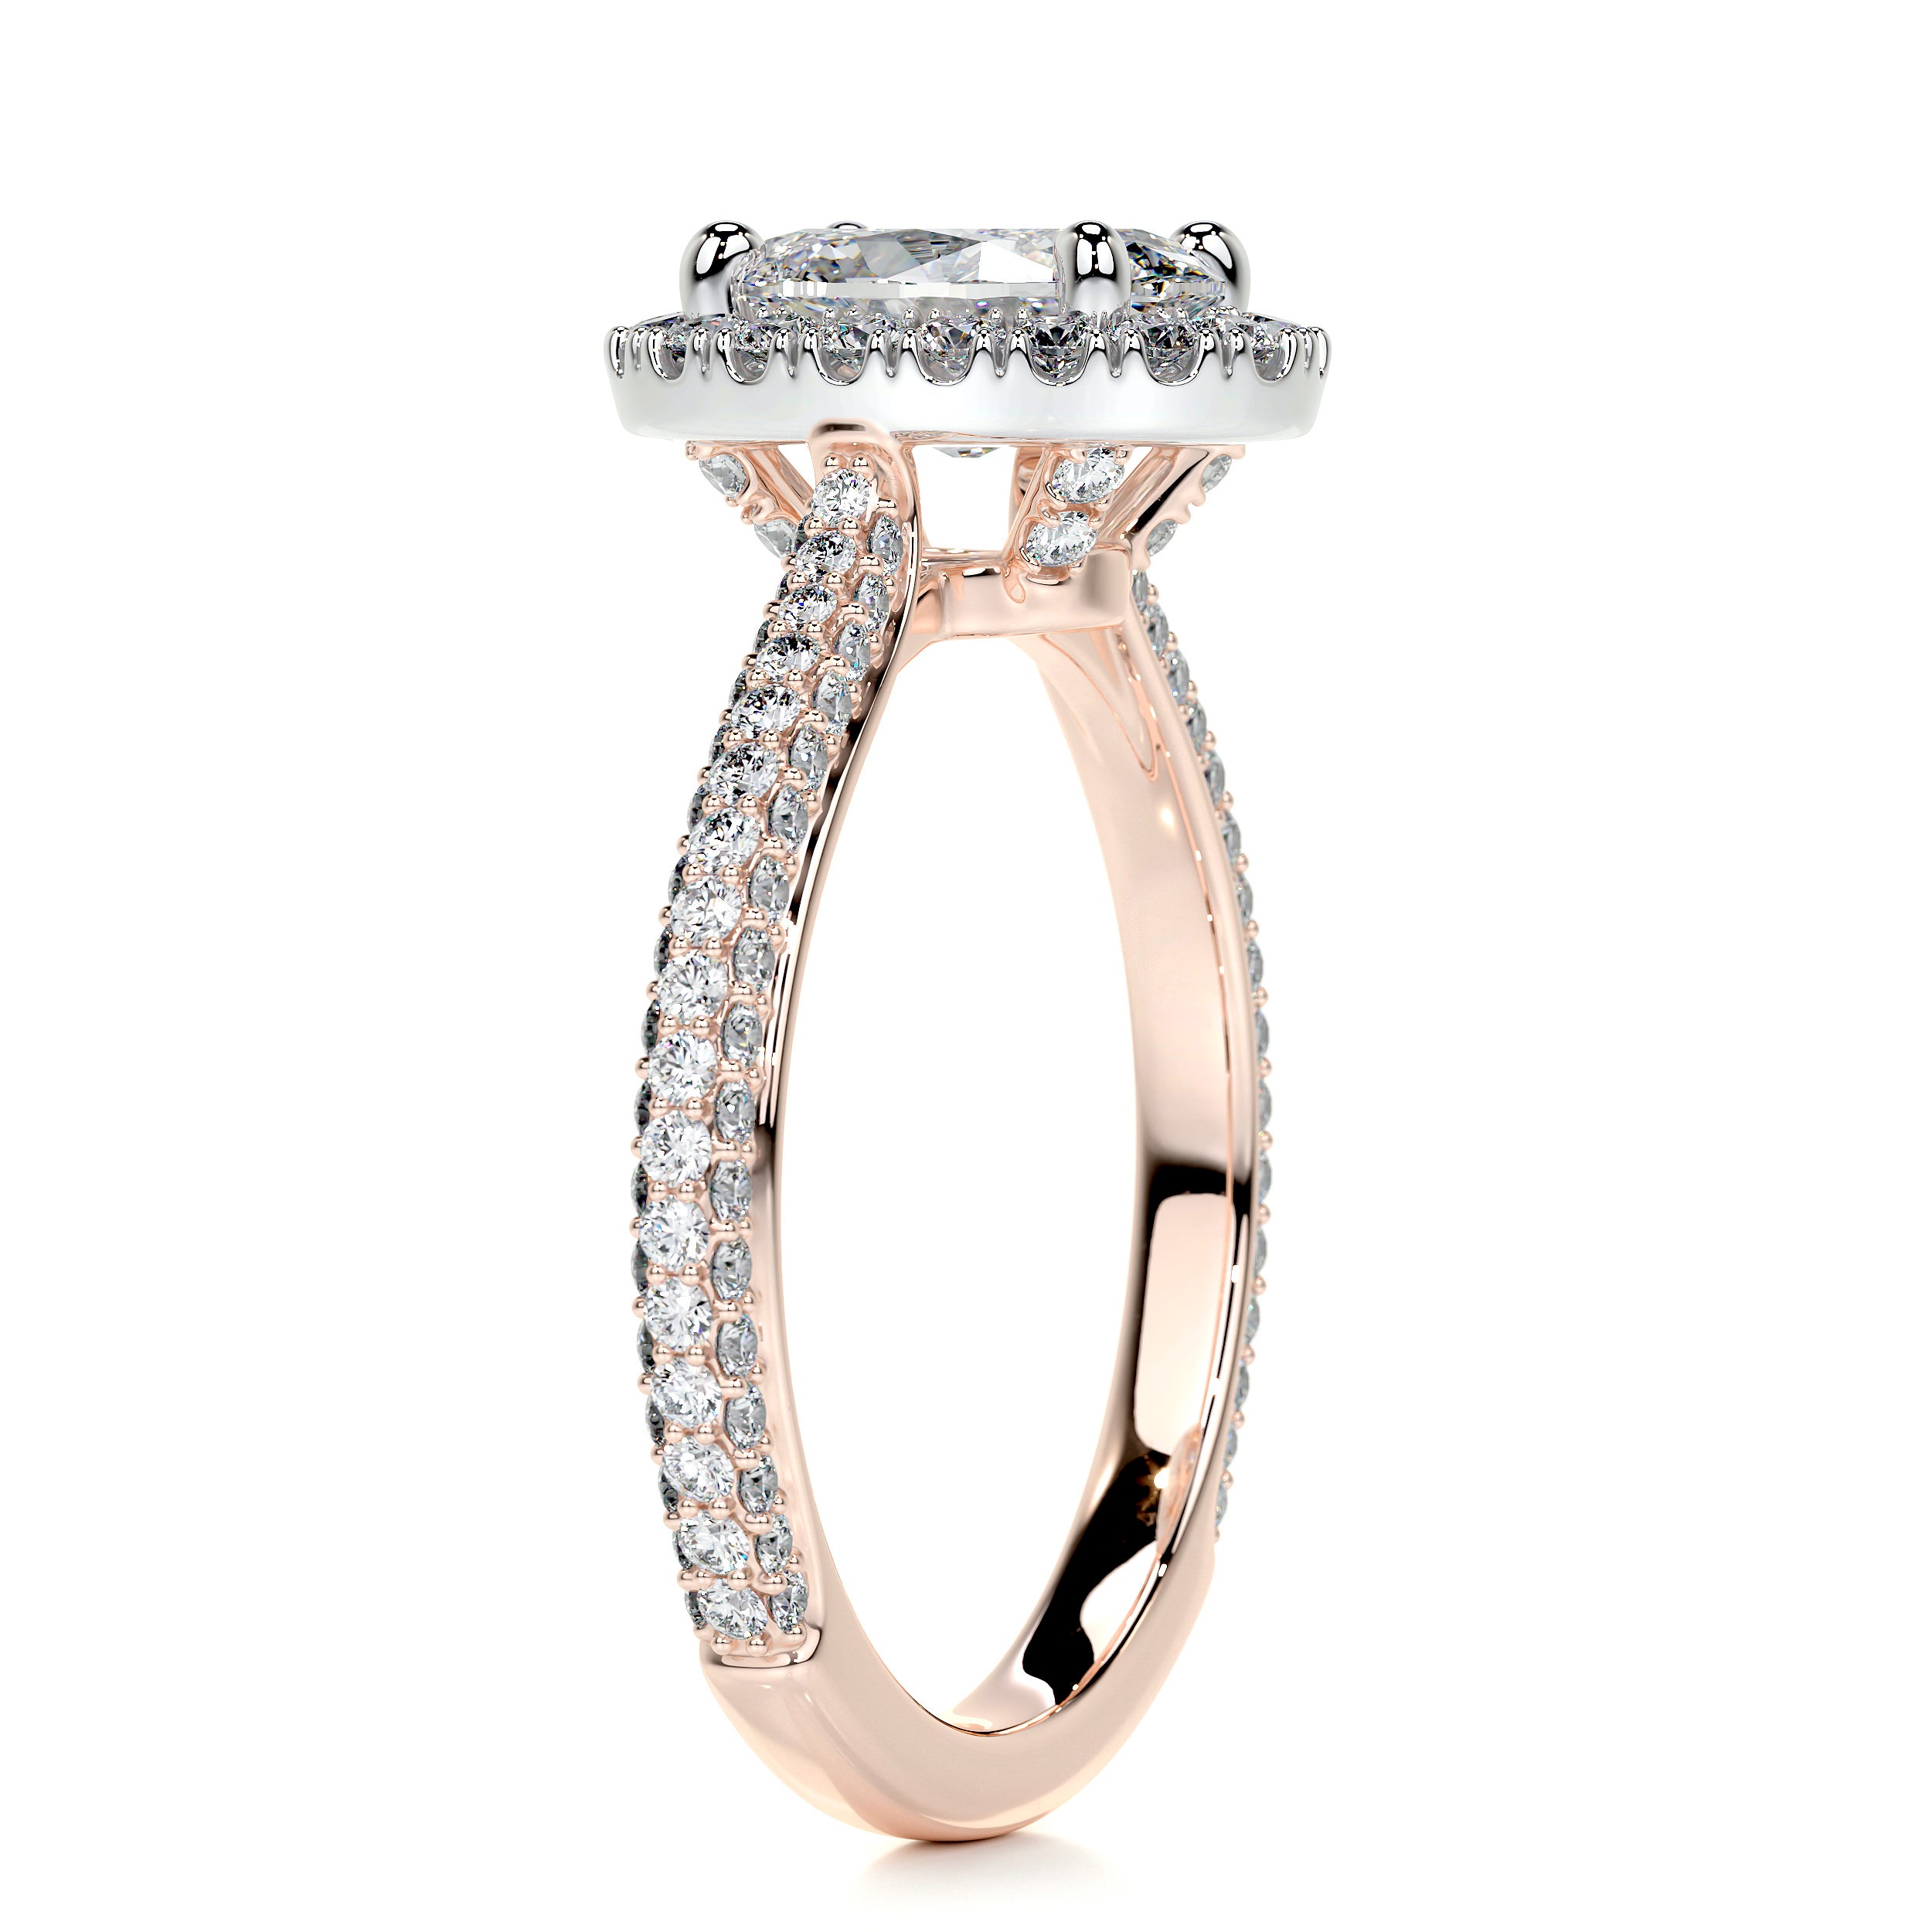 Kinley Diamond Engagement Ring   (2.25 Carat) -14K Rose Gold